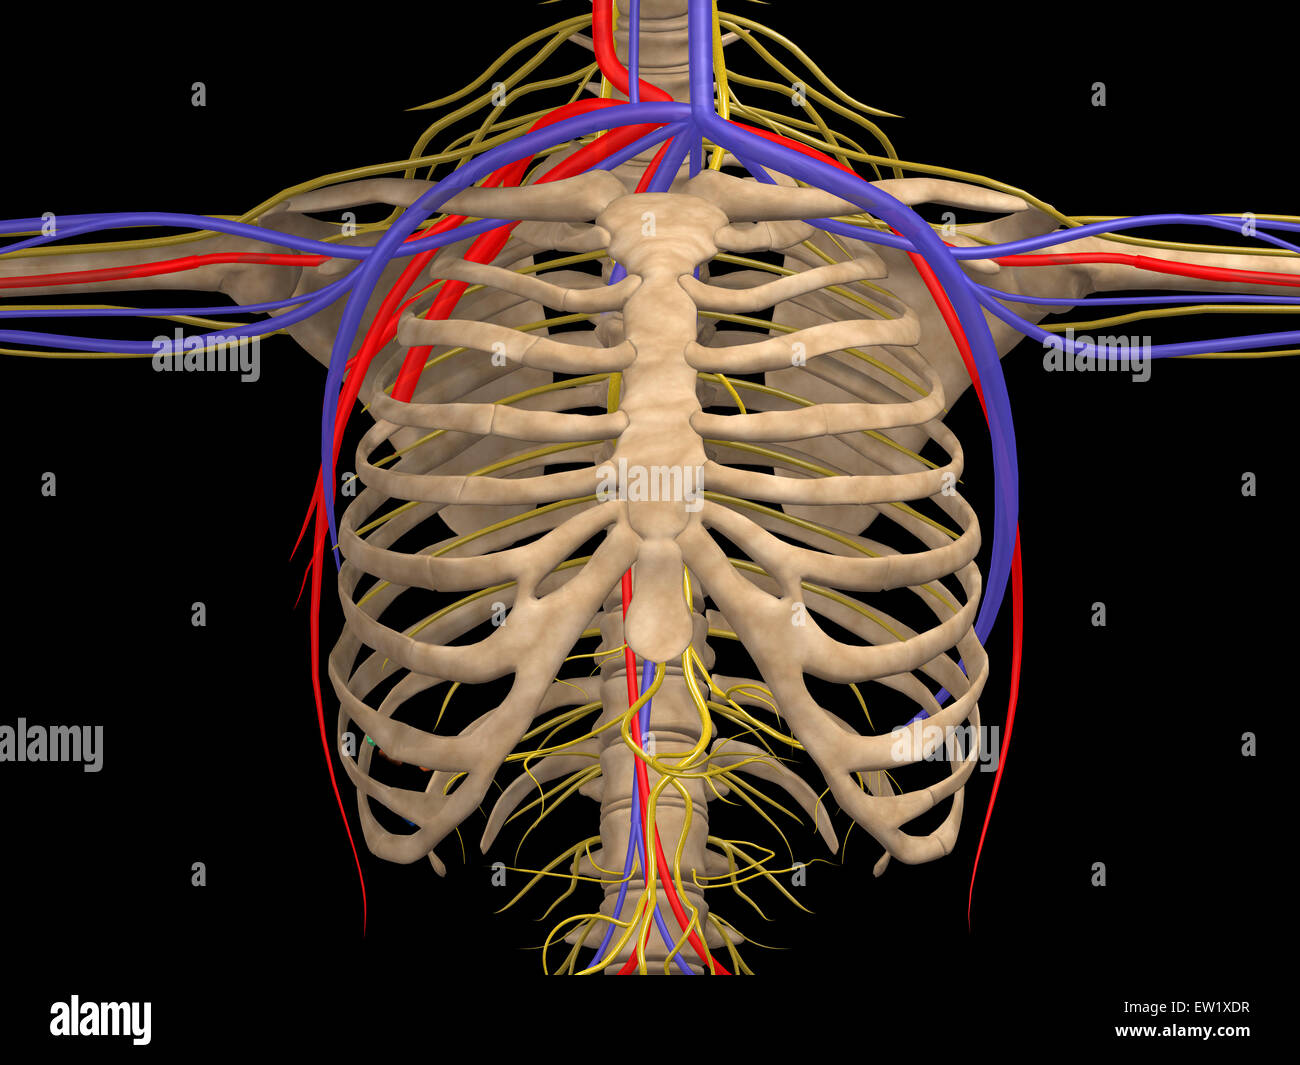 Caja torácica con nervios, arterias y venas. Foto de stock